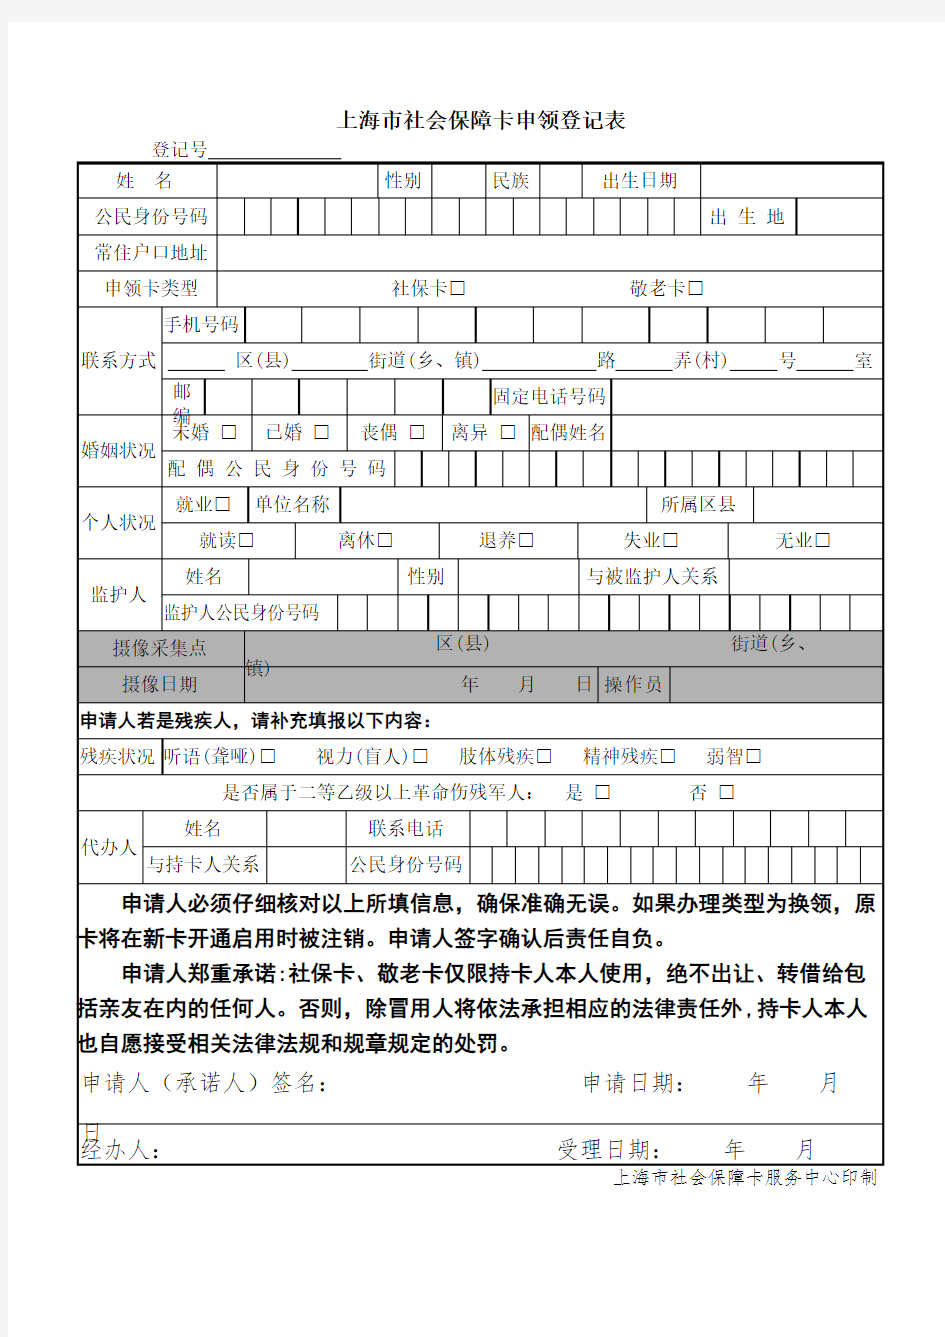 上海市社会保障卡申领登记表